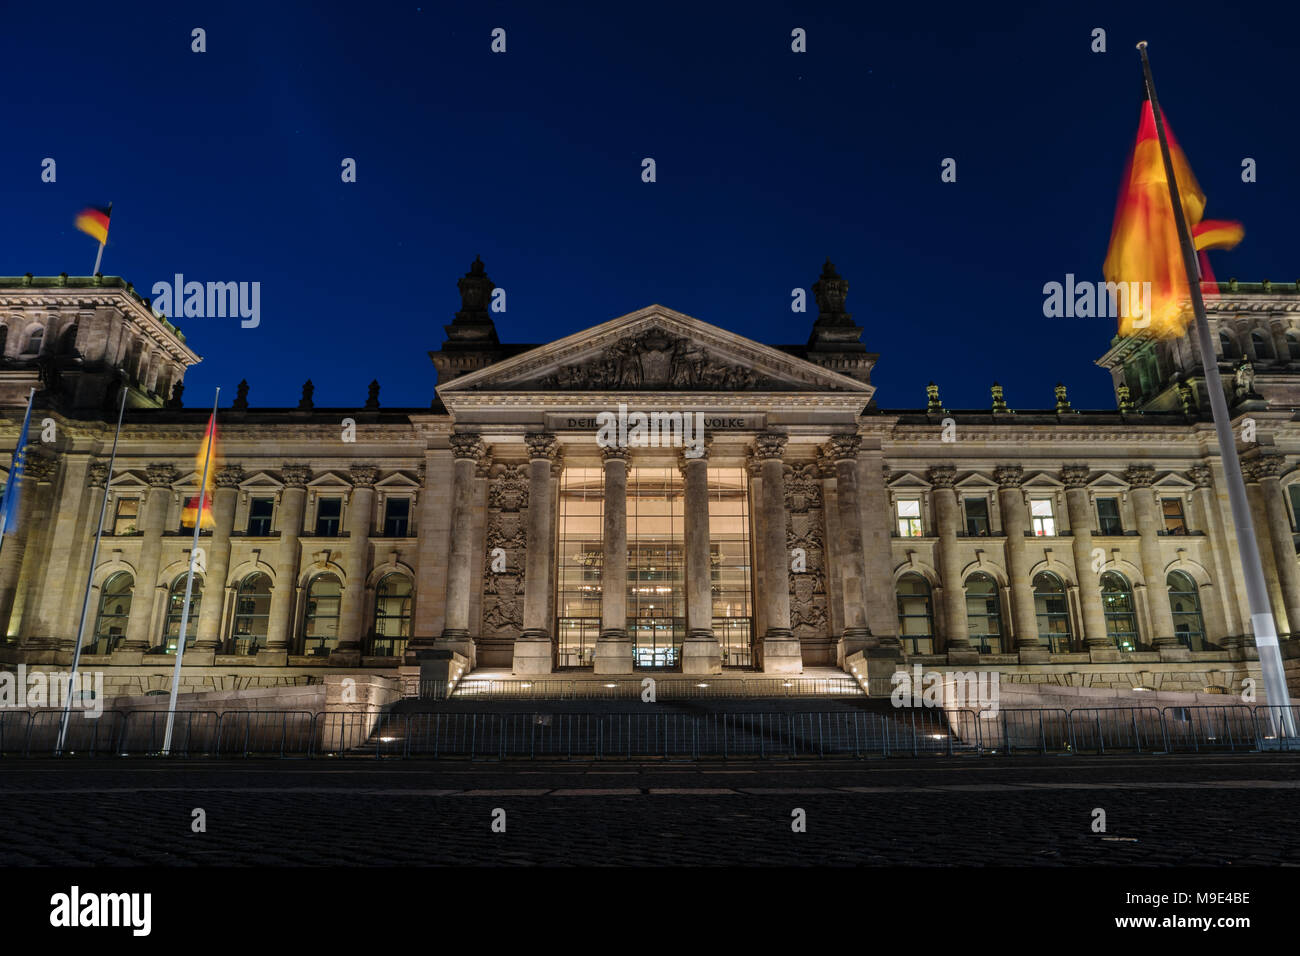 Edificio del Reichstag alemán en la noche, Mitte, Berlin, Alemania, Europa. O Reichstag Bundestag es el Parlamento federal alemán. Hito Popular, famosa actrav Foto de stock